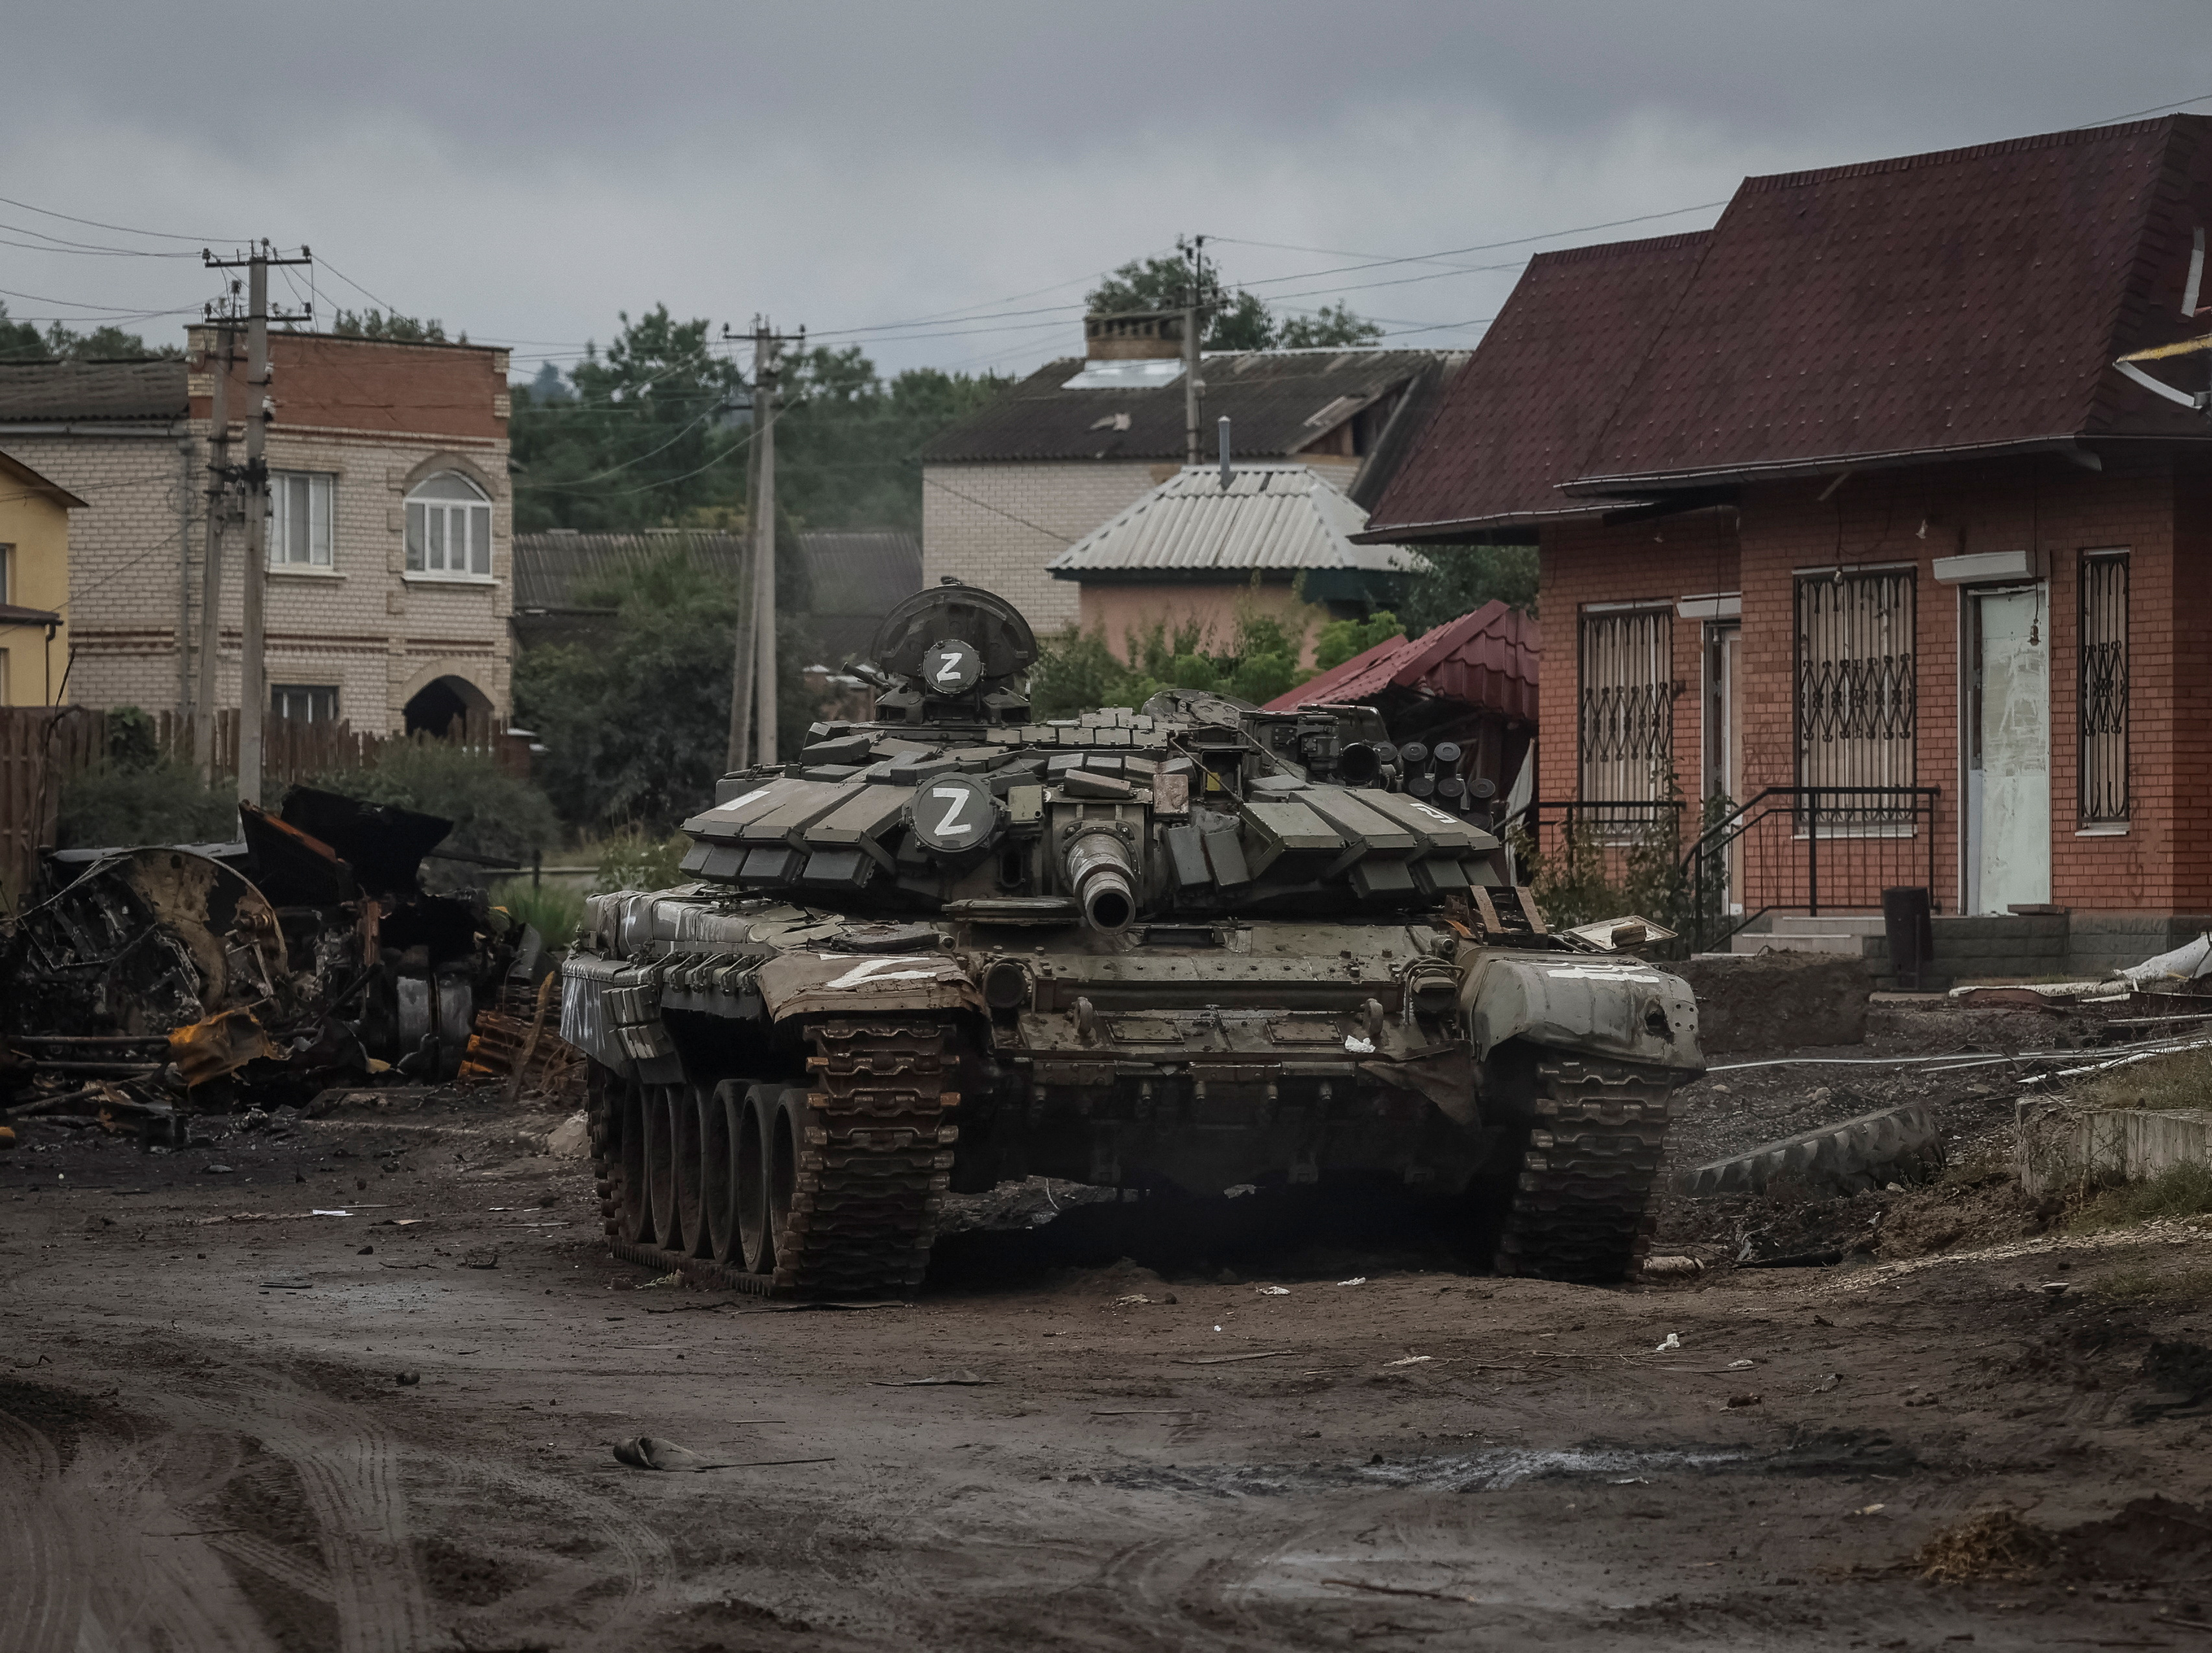 Uno de los tanques de la Cuarta División Motorizada rusa, que fue prácticamente destruida durante la contraofensiva ucraniana de los últimos días, tirado en una de las calles de la liberada Izium. (REUTERS/Gleb Garanich)